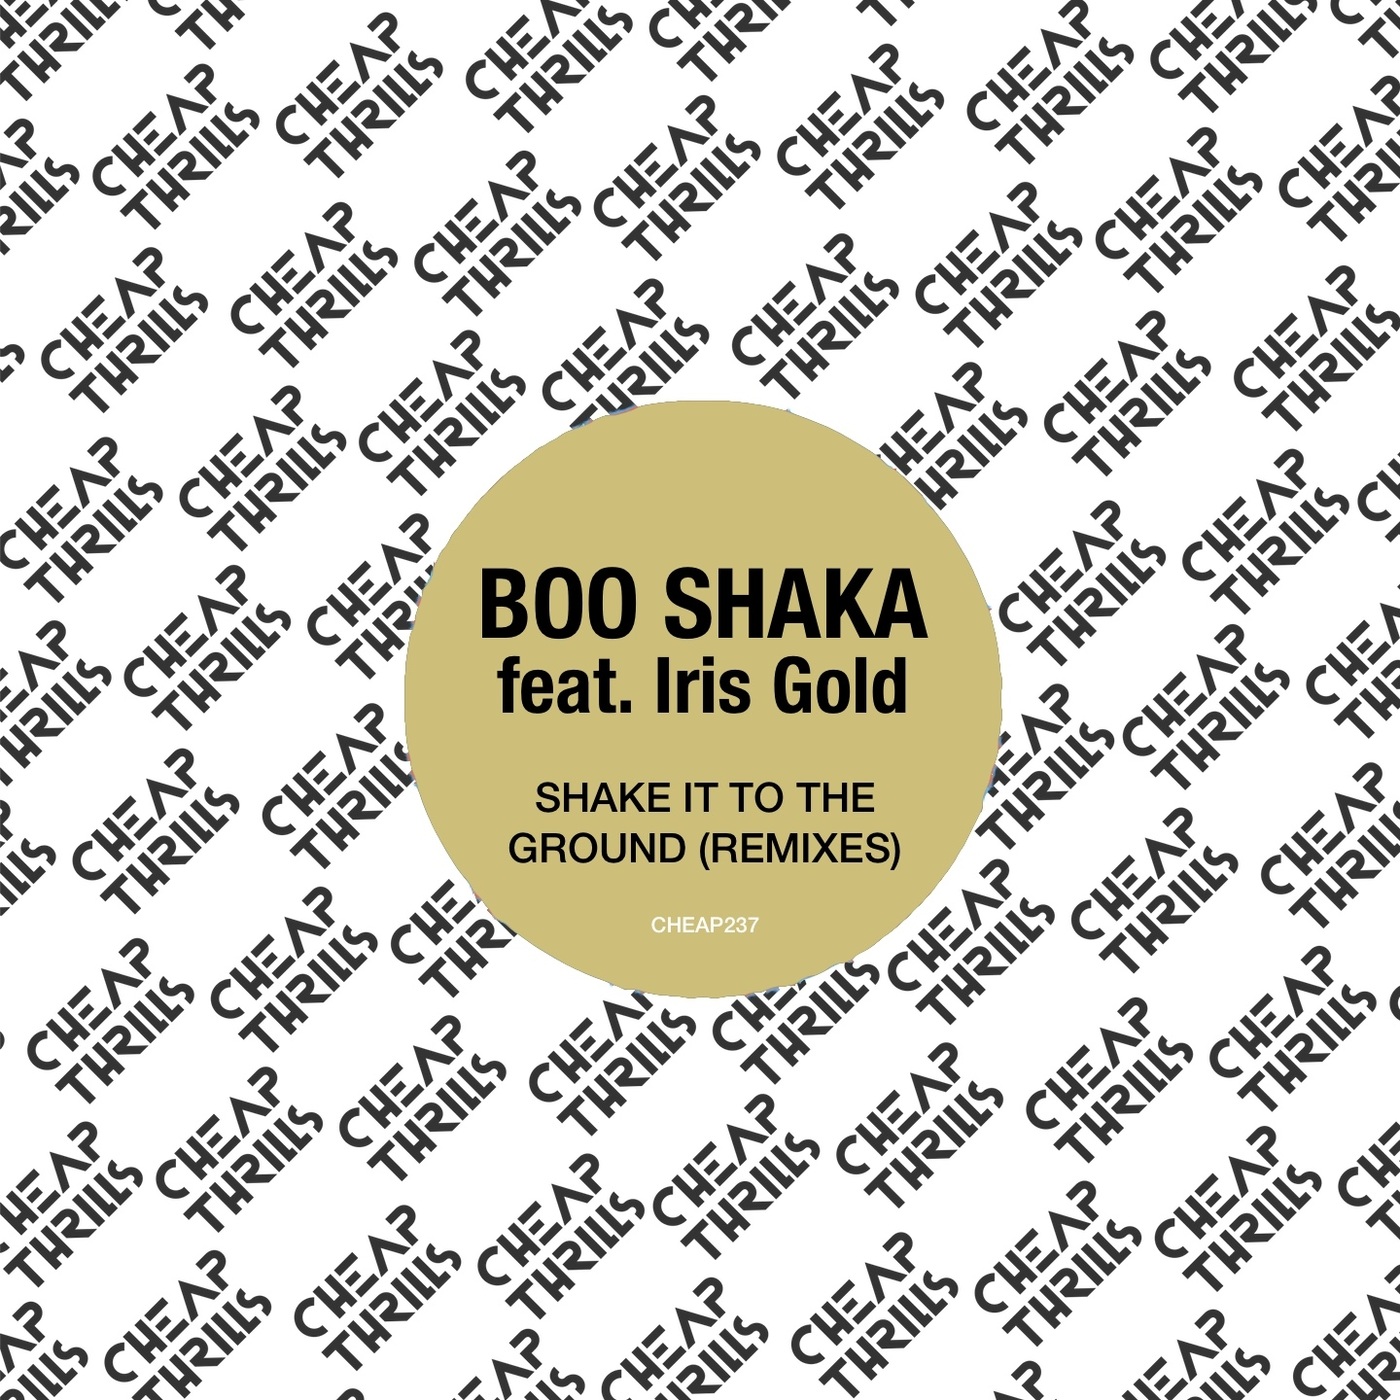 BOO SHAKA ft Iris Gold - Shake It to the Ground (Remixes) / Cheap Thrills